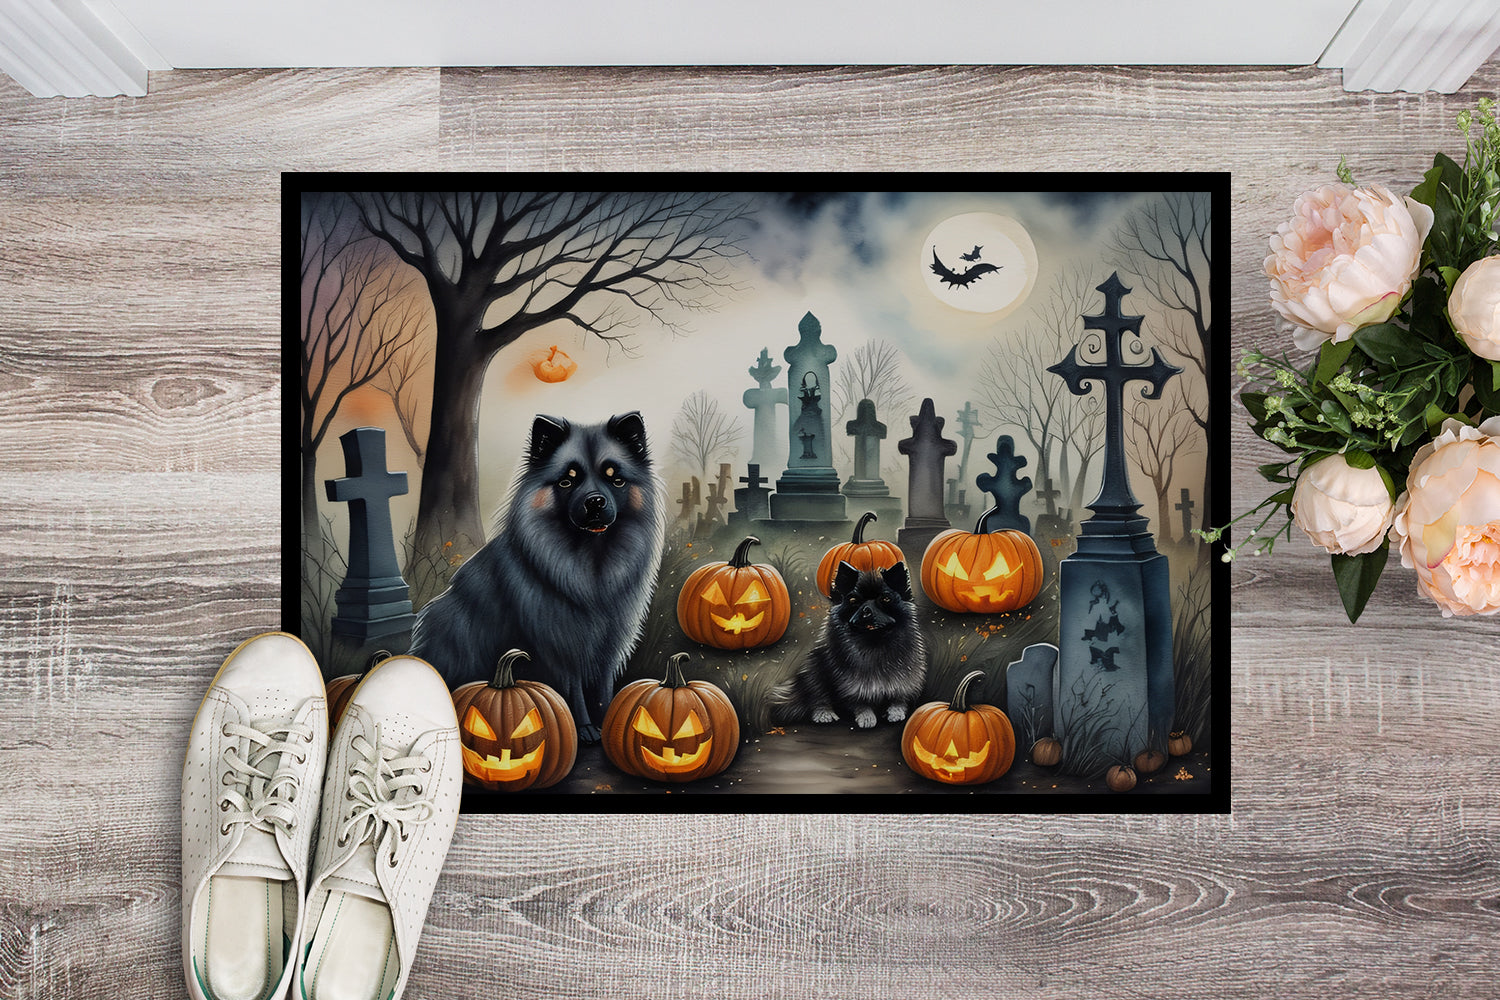 Keeshond Spooky Halloween Doormat 18x27